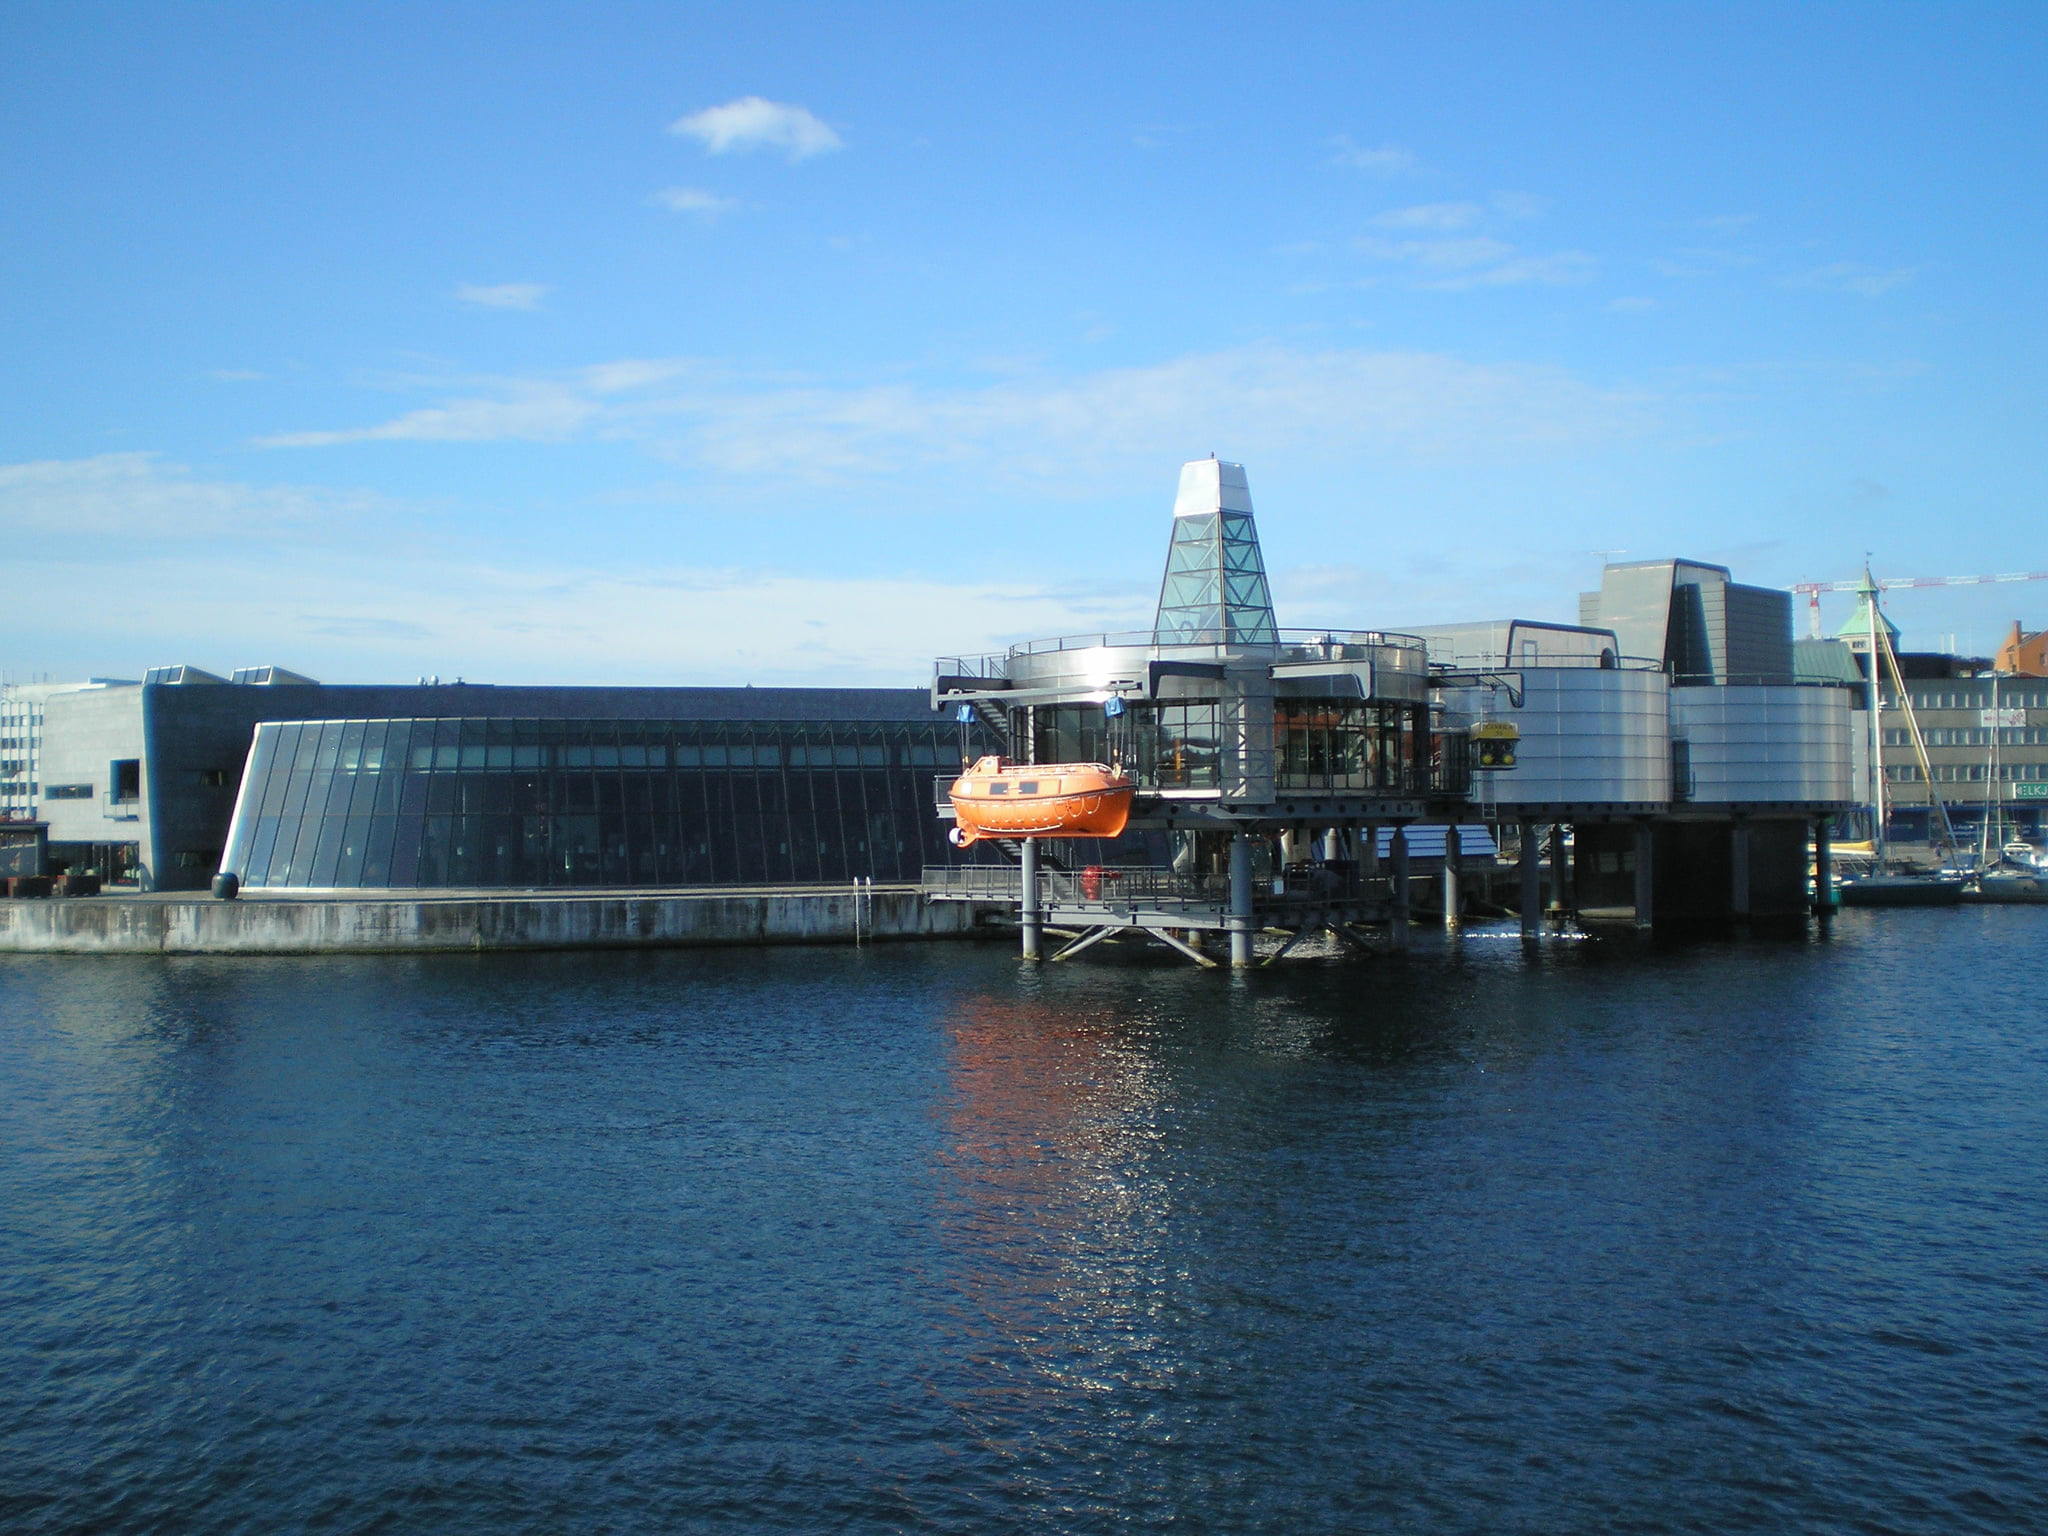 The Norwegian Petroleum Museum